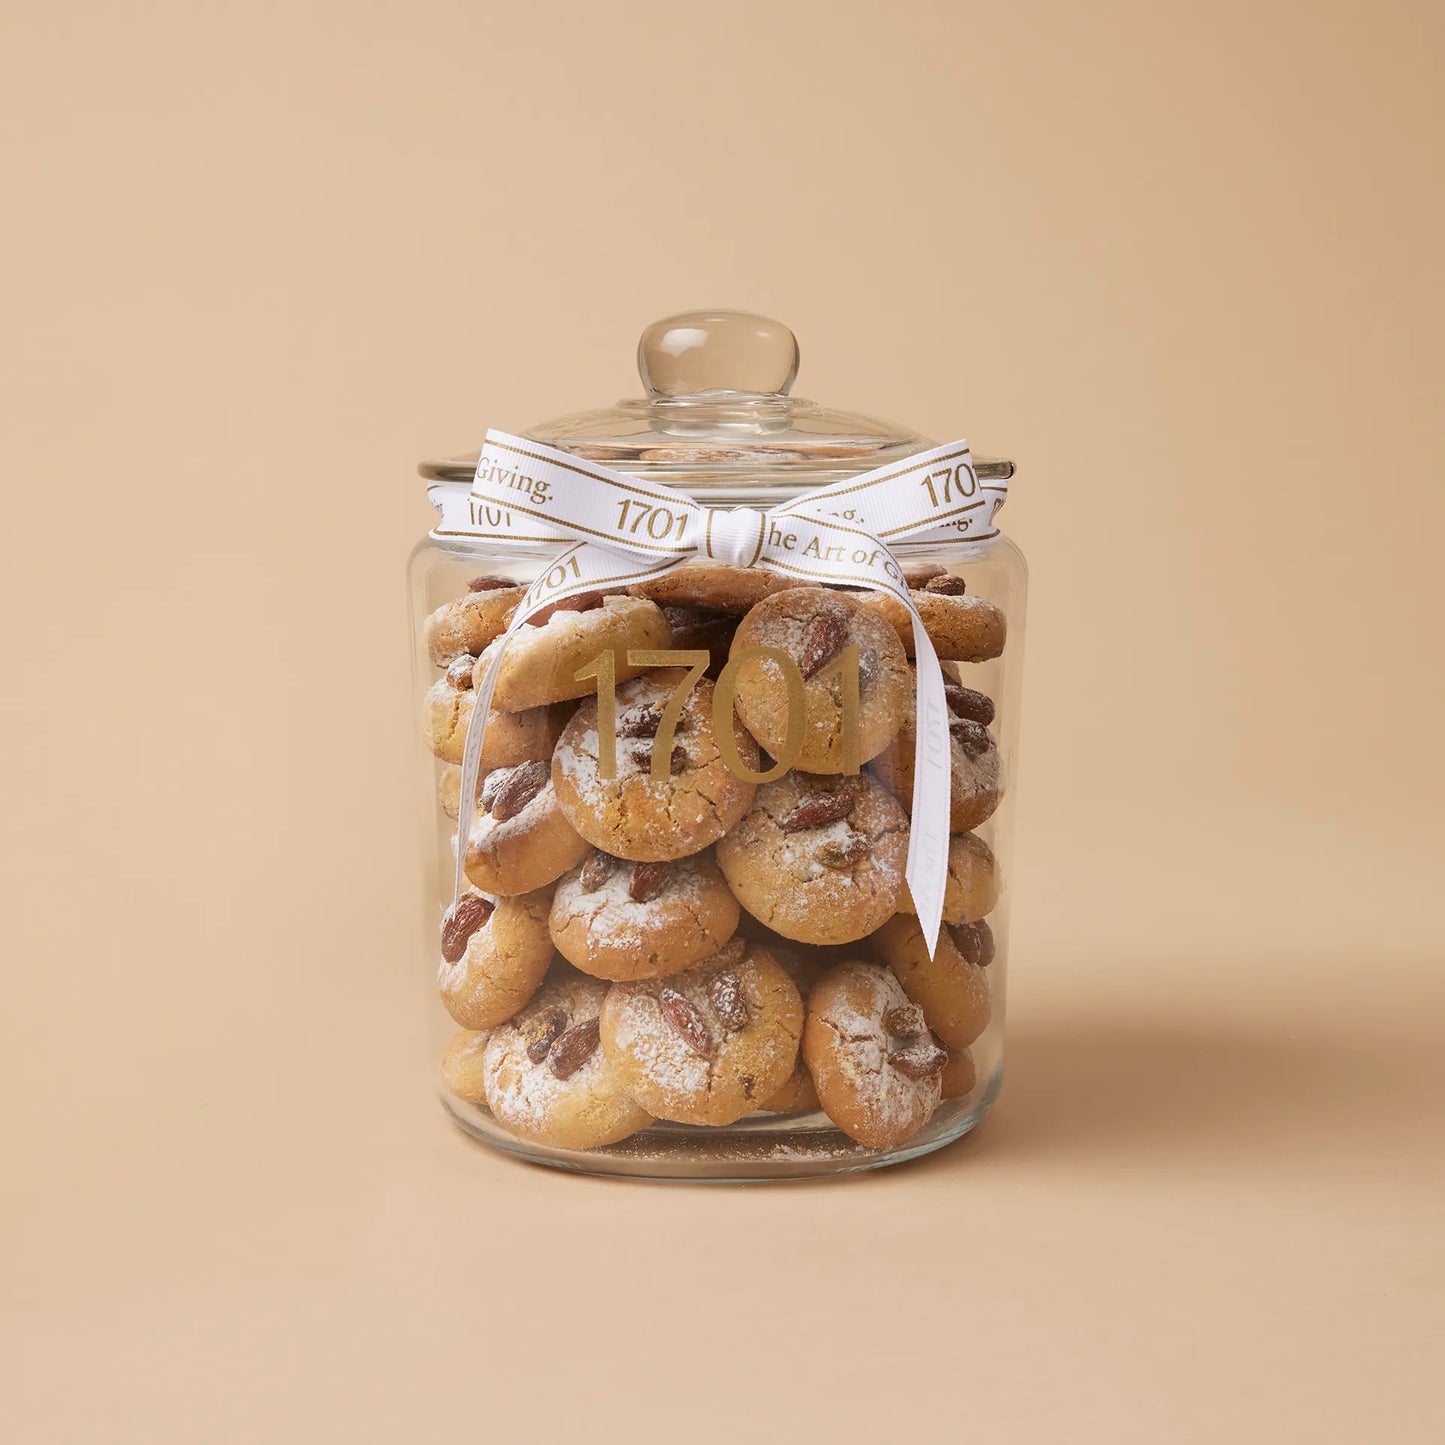 Almond & Pistachio Shortbread Jar (1kg) - 1701